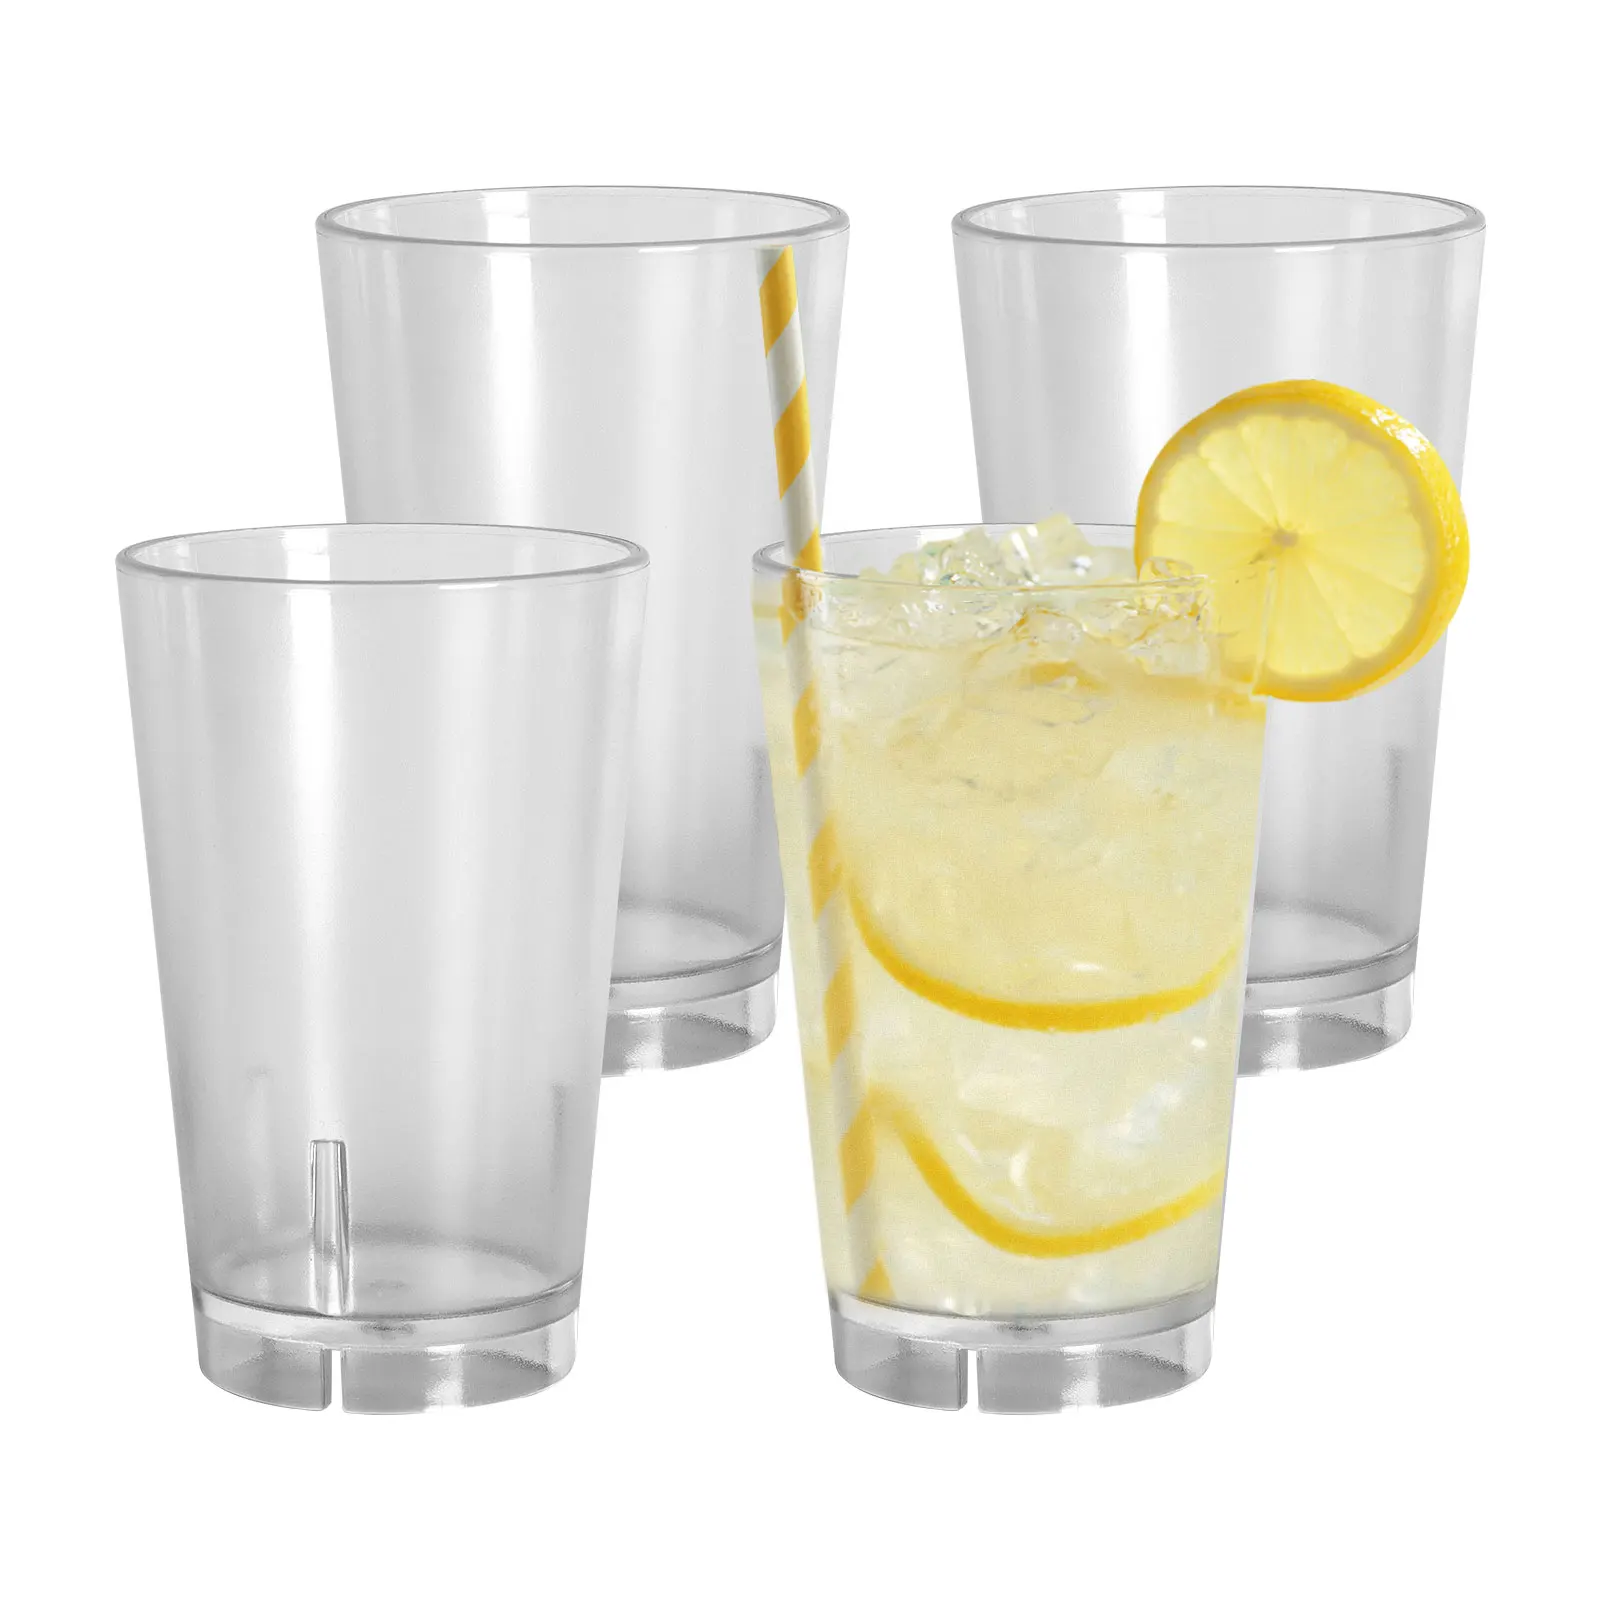 

Пластиковые стаканы для напитков, набор стаканов 4 350 мл/12 унций, пластиковые стаканы, штабелируемые стаканы для воды, прозрачные